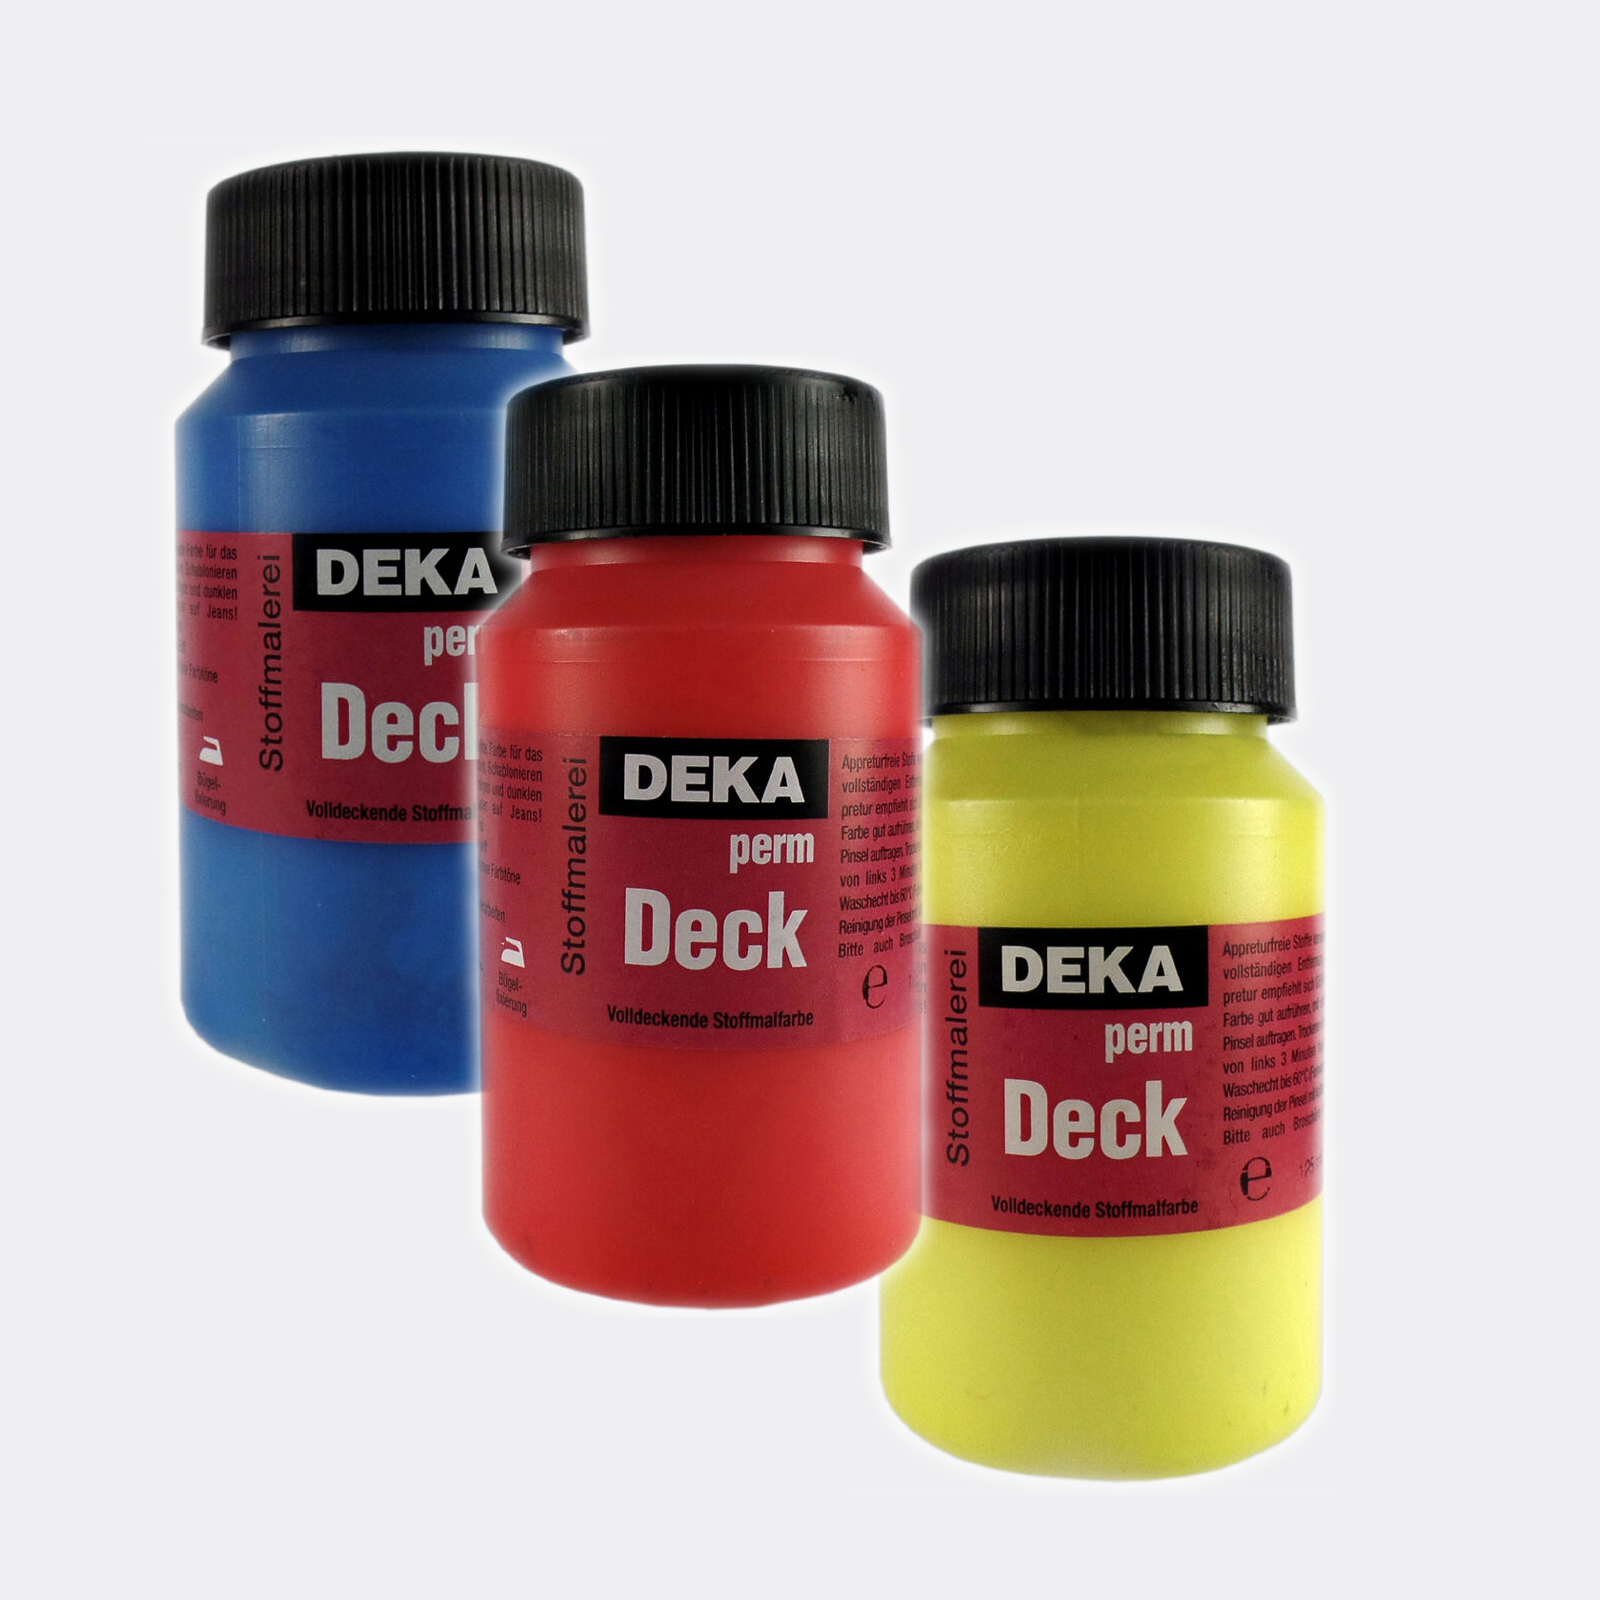 DEKA-PermDeck, eccellente colore per dipingere su stoffe scure da 125ml